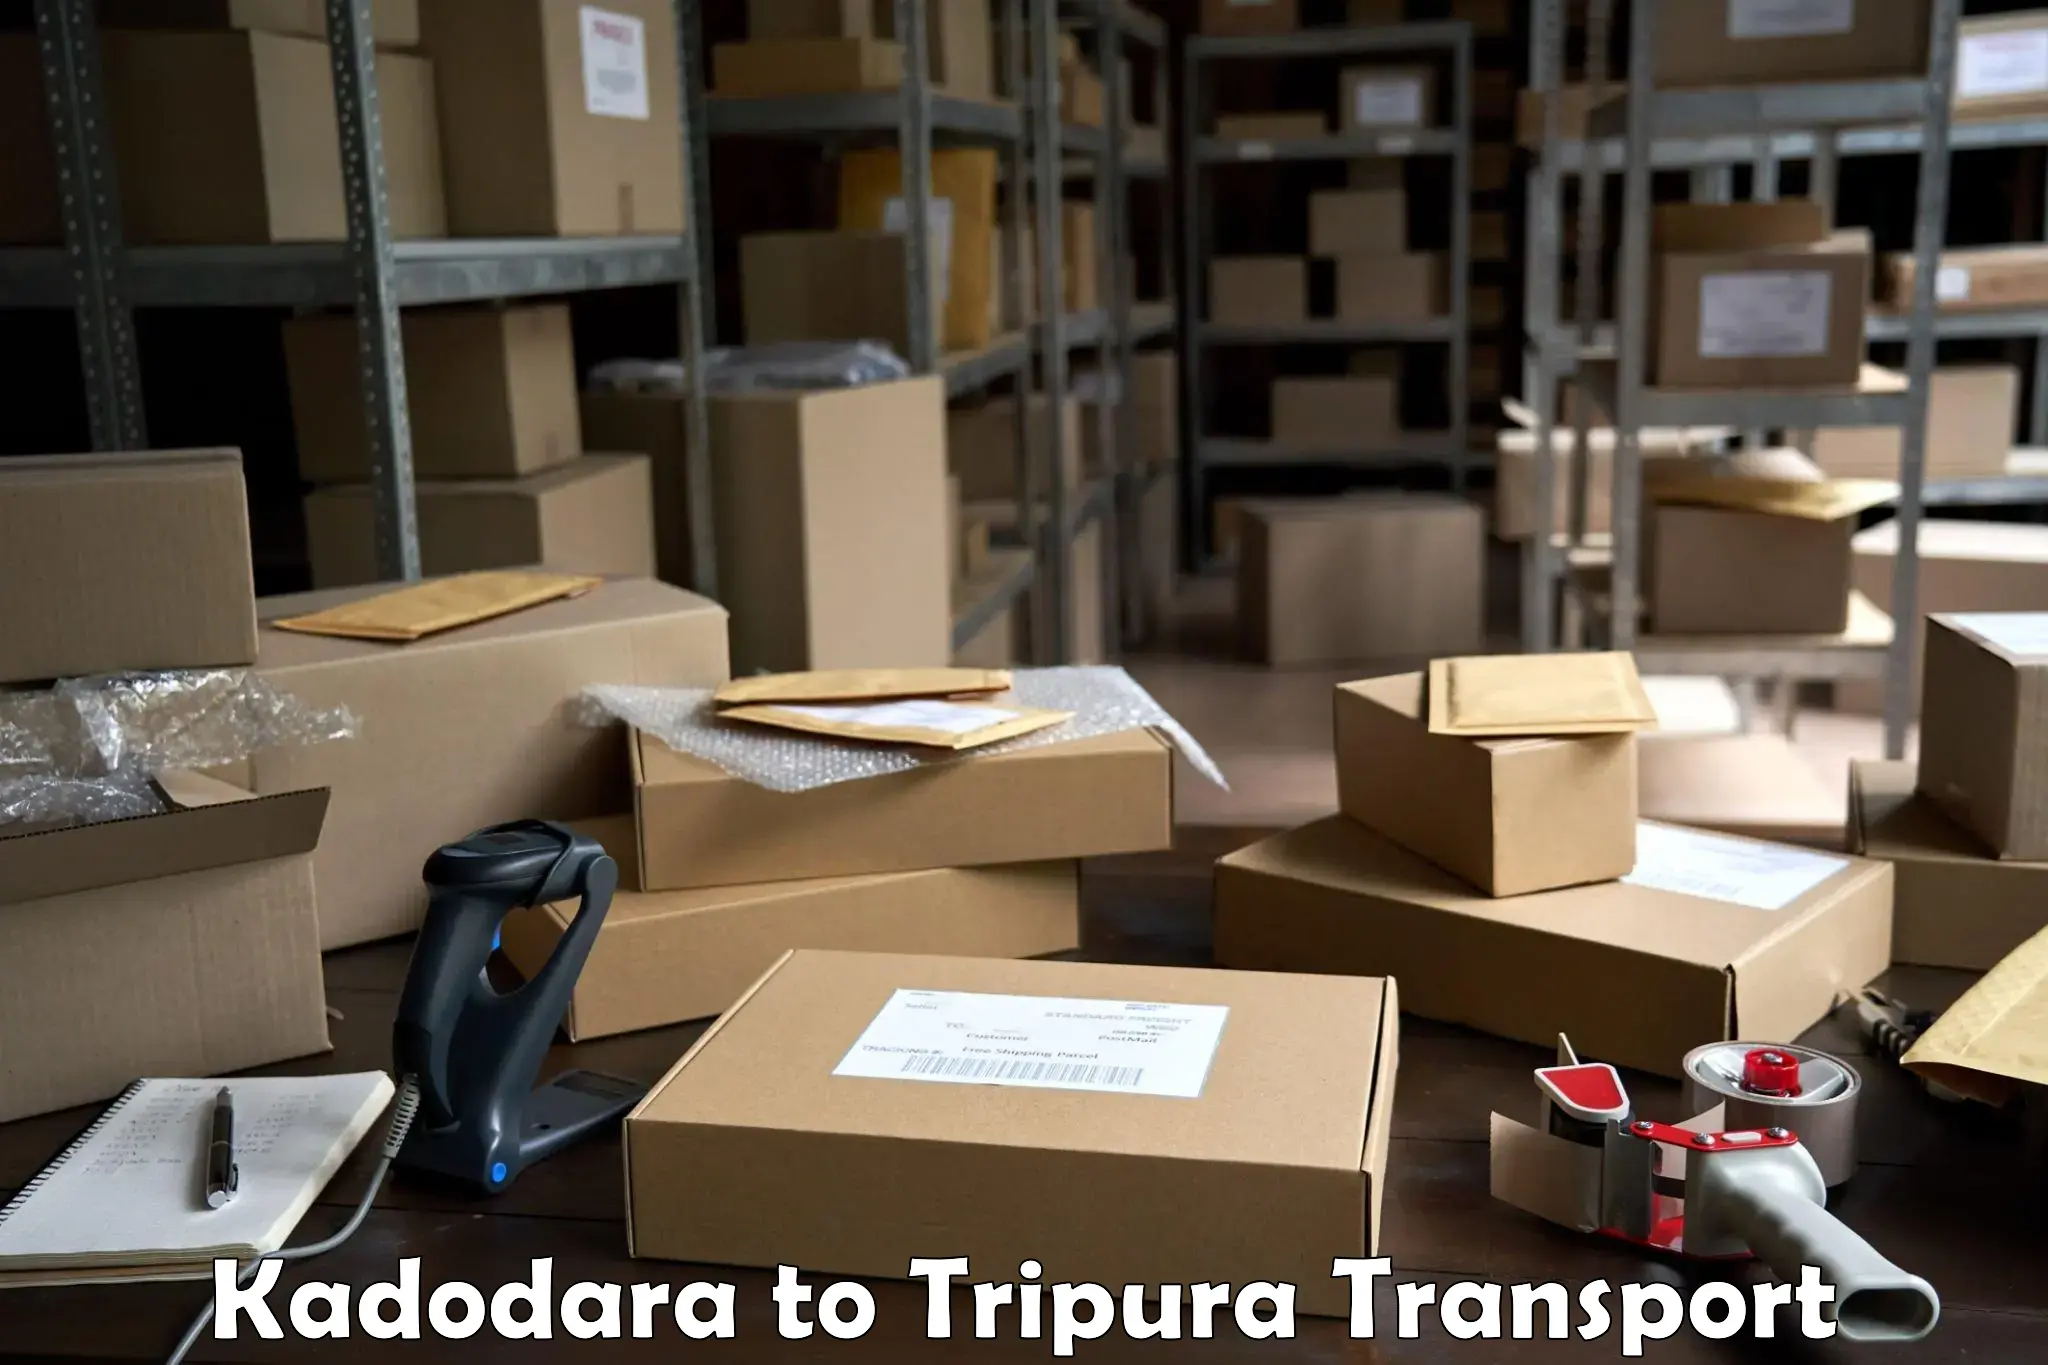 Transport in sharing in Kadodara to Tripura